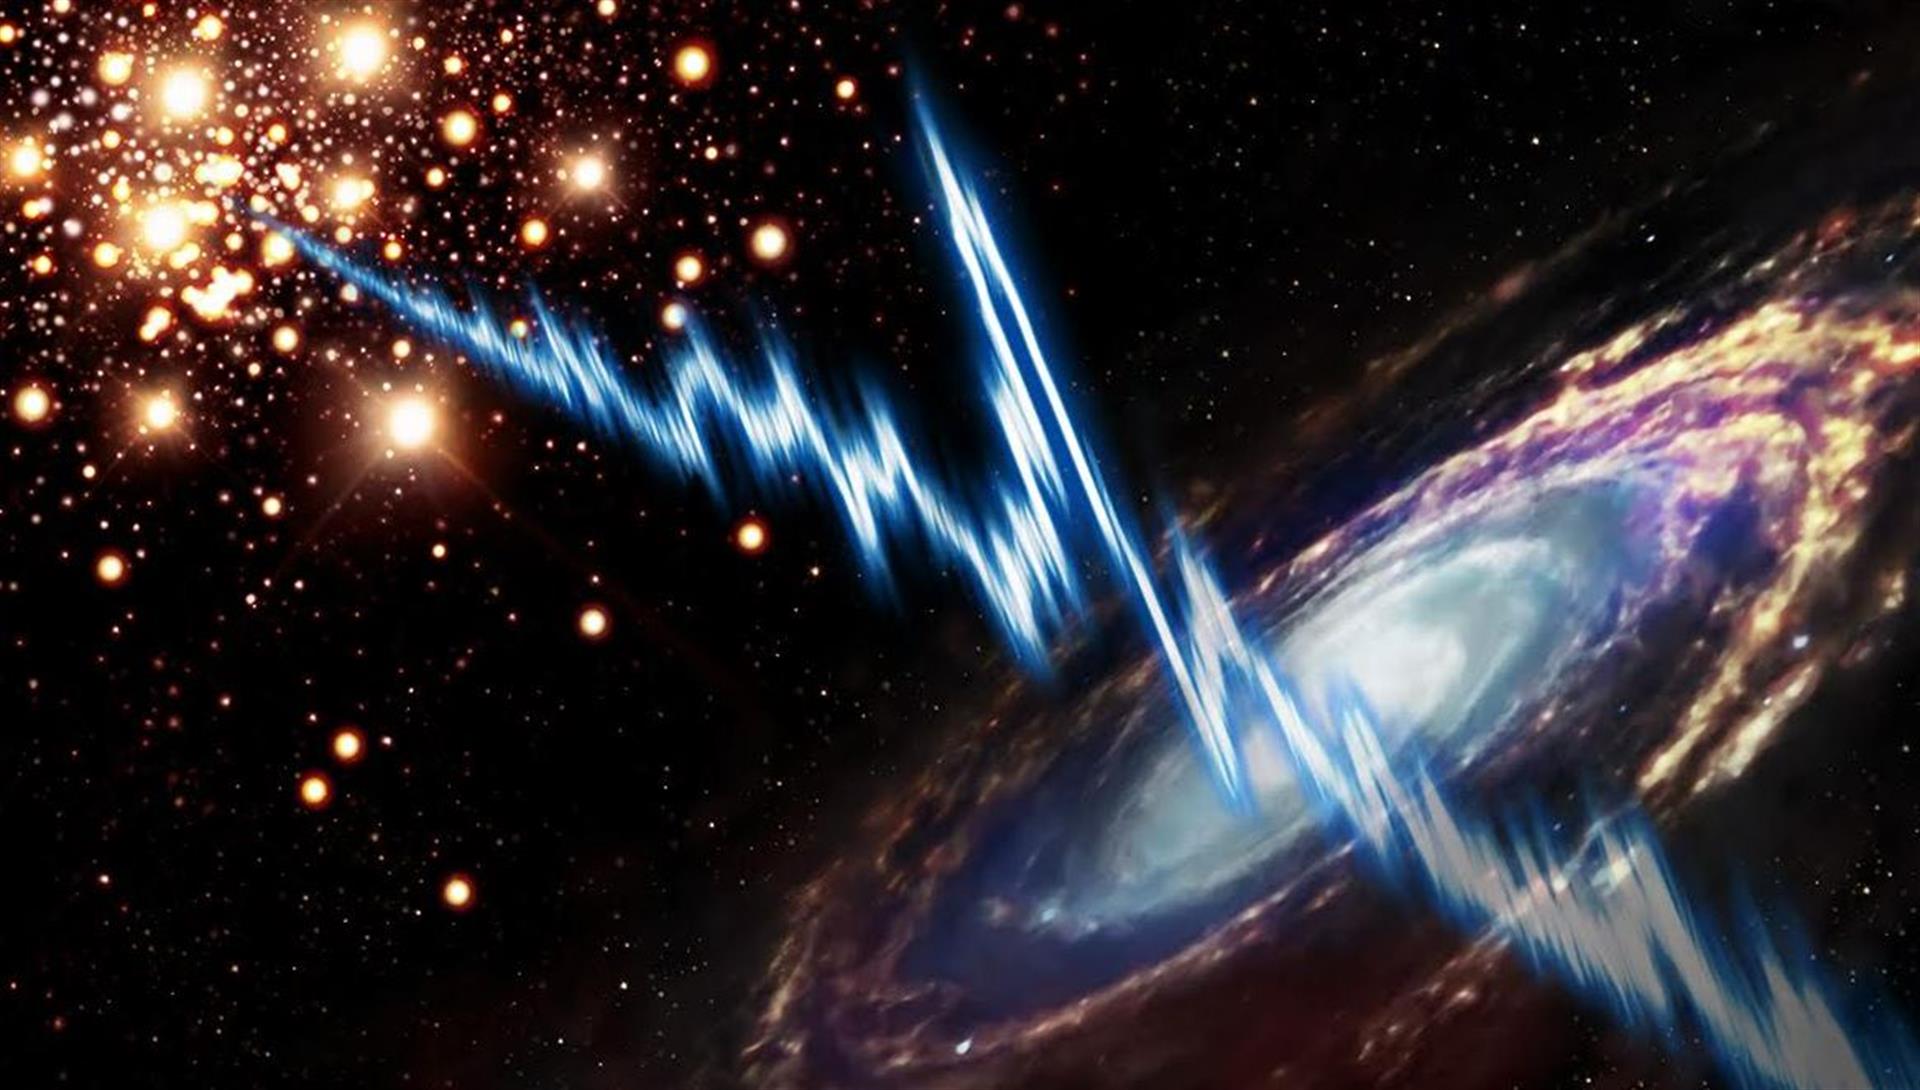 Estallidos rápidos captados en la galaxia, una rareza que sorprende a los astrónomos